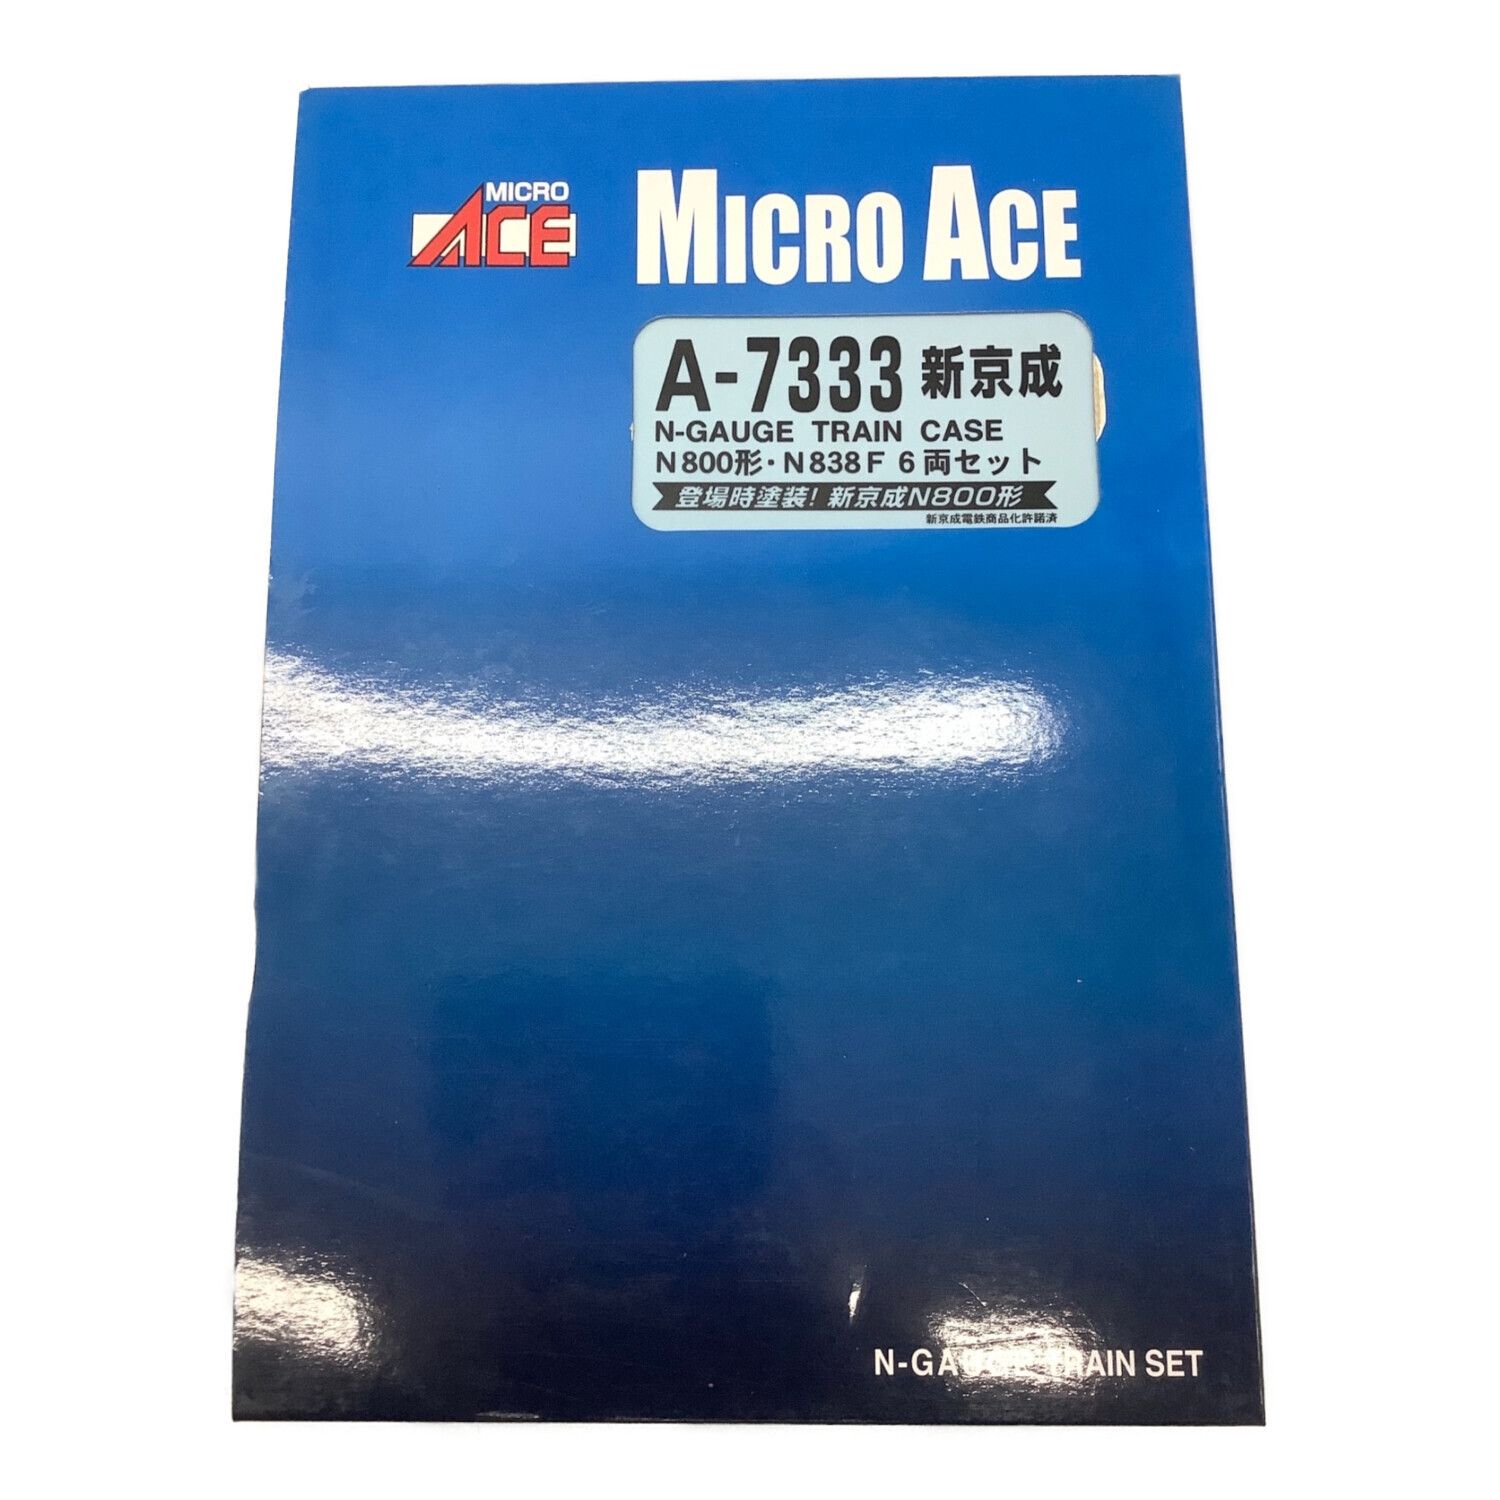 MICRO ACE (マイクロエース) Nゲージ A7333 新京成N800形 N838F 6両 